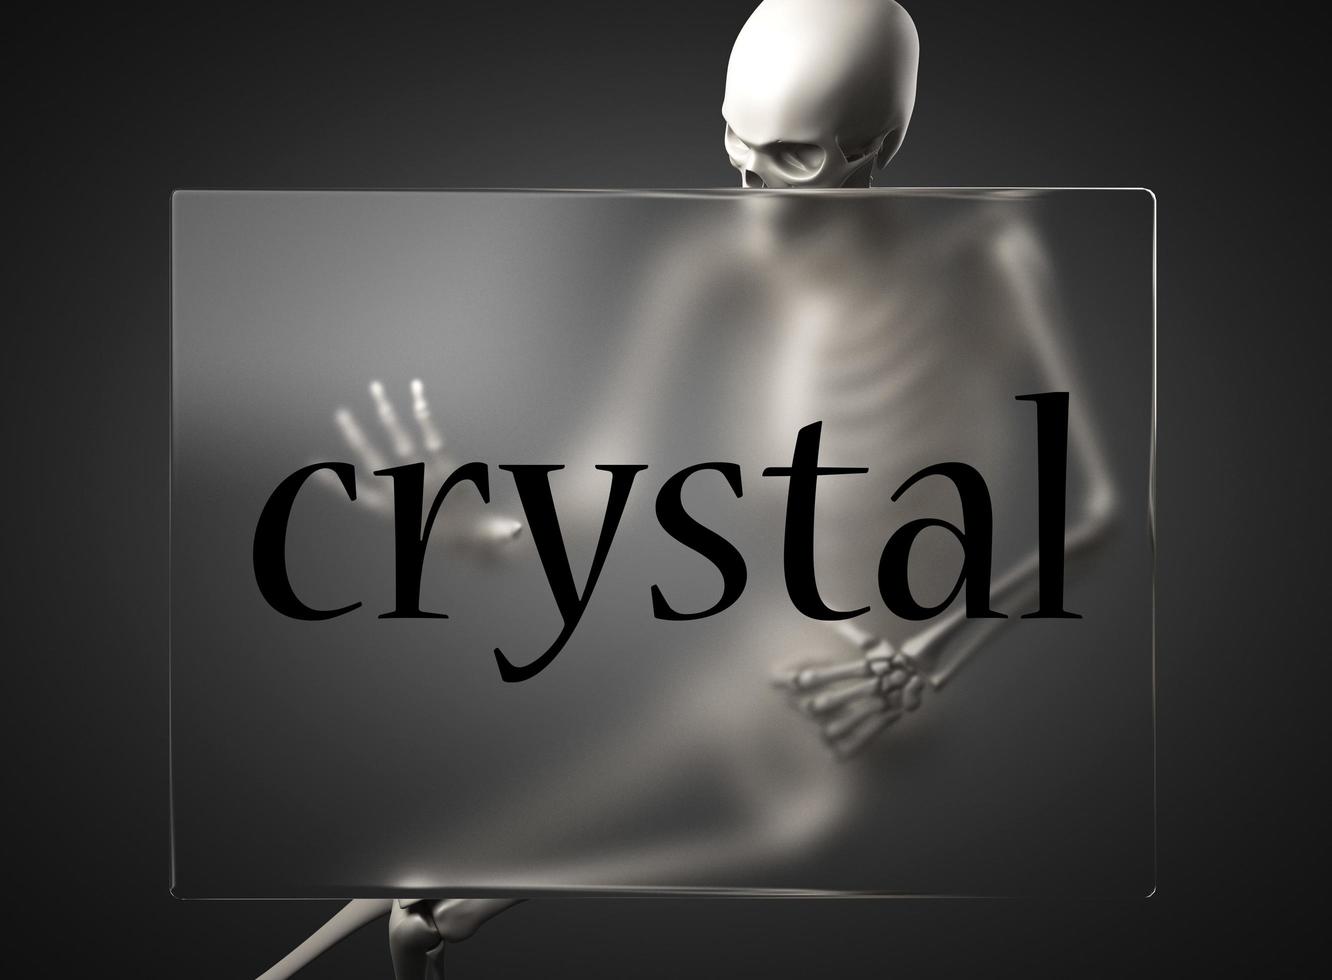 palavra de cristal em vidro e esqueleto foto